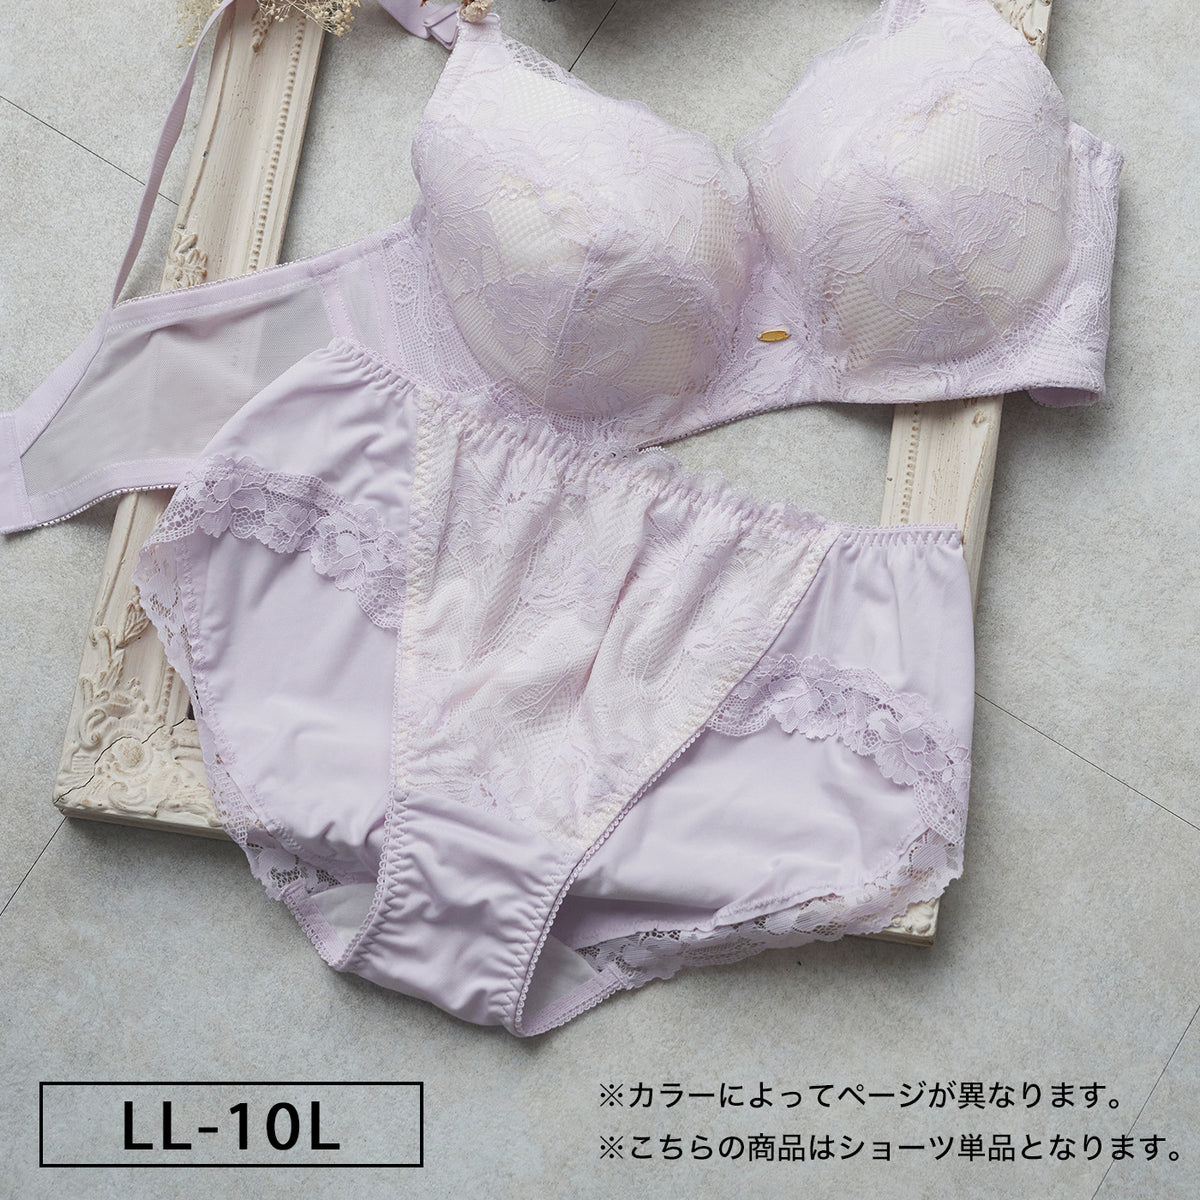 【LL〜10L】しっかりホールド・美胸キーパー3/4カップペアショーツ_90564-40